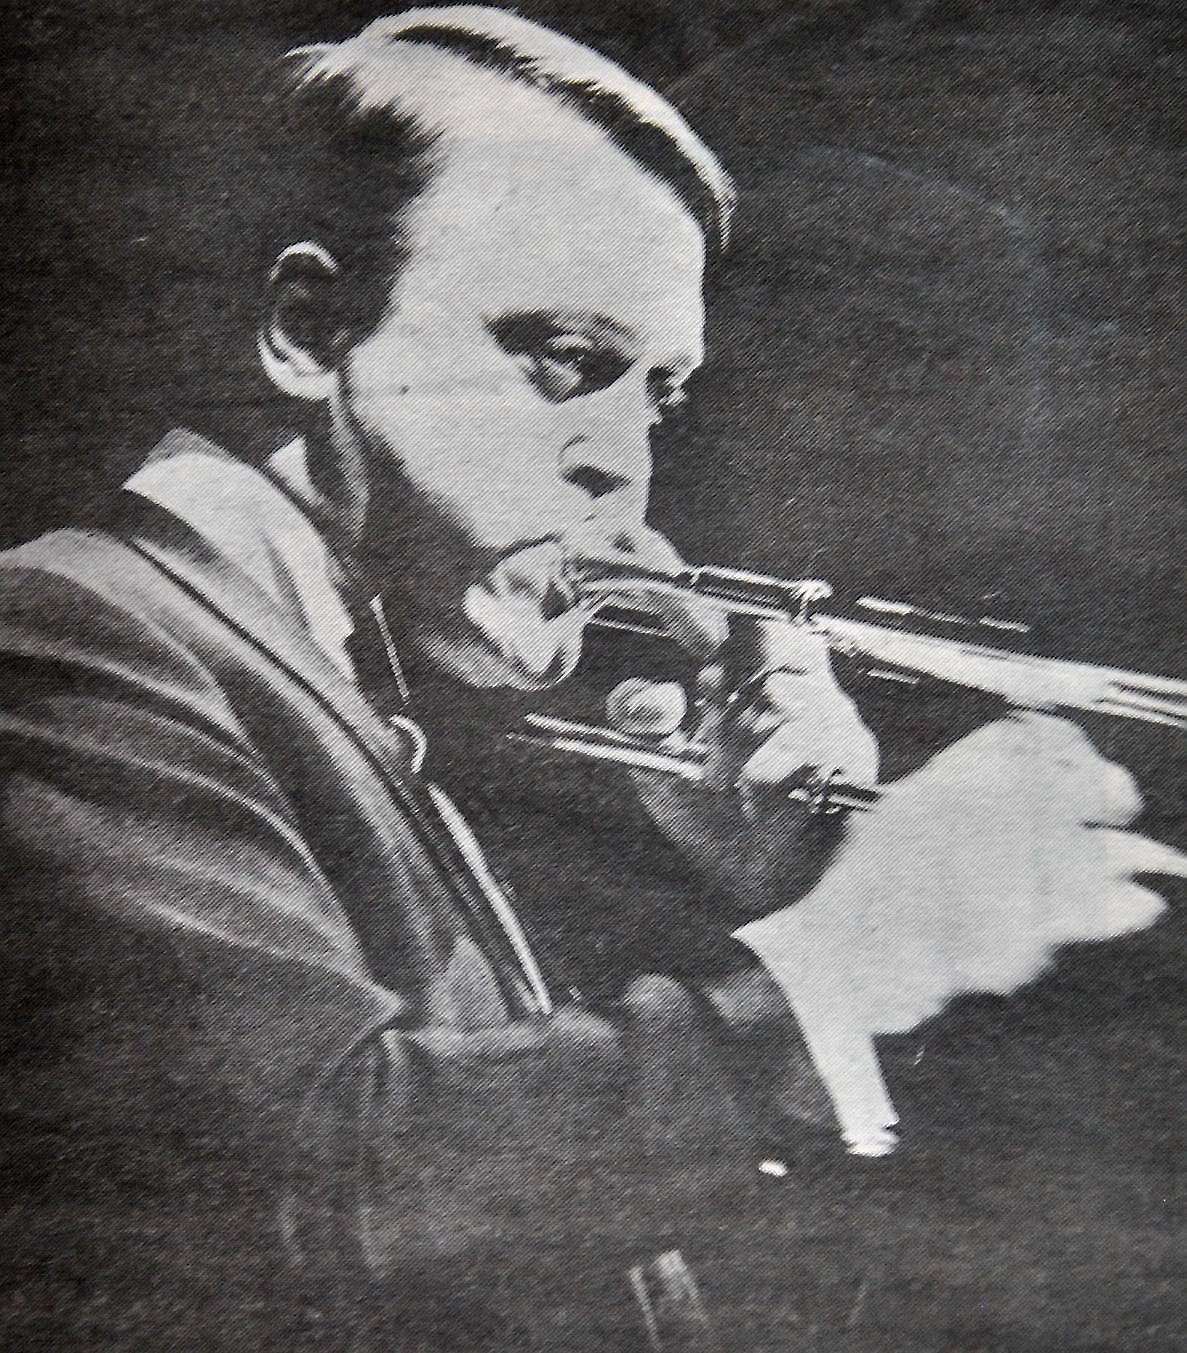 Åke ”Kometen” Persson från Hässleholm blev en av jazzens stora stjärnor på 50-talet.
Arkiv